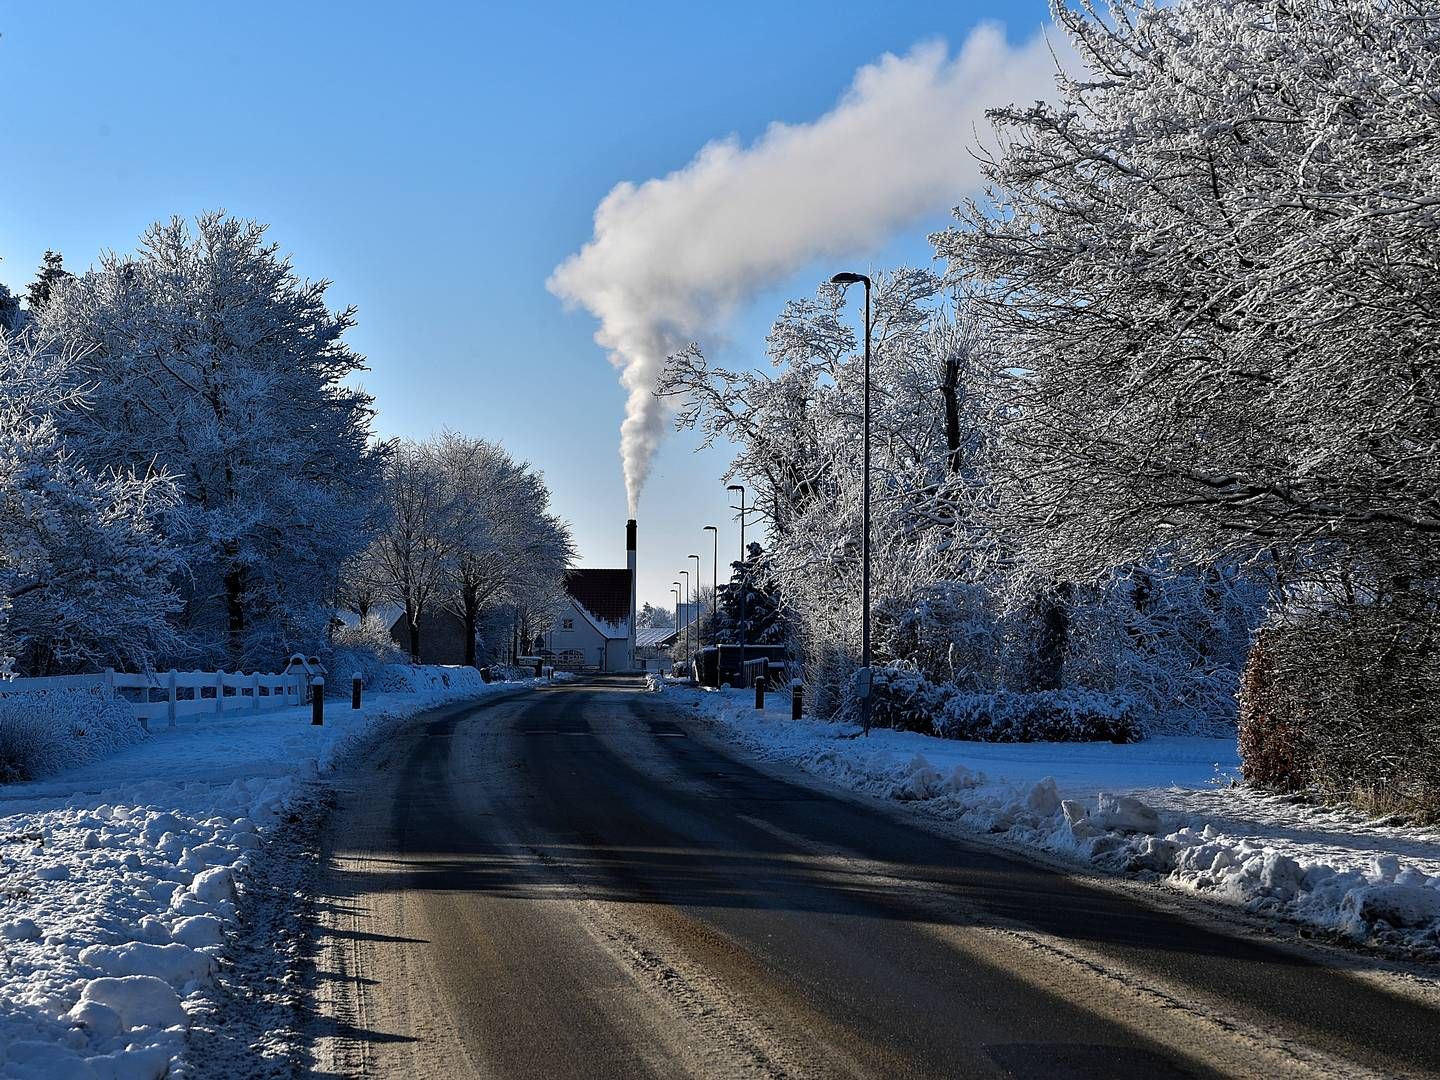 IKKE OVER. Den danske energistyrelsen advarer om at energikrisen ikke er over, og oppfordrer fortsatt til å spare mest mulig på energien i tilfelle det blir en kald vinter. | Foto: Ernst van Norde